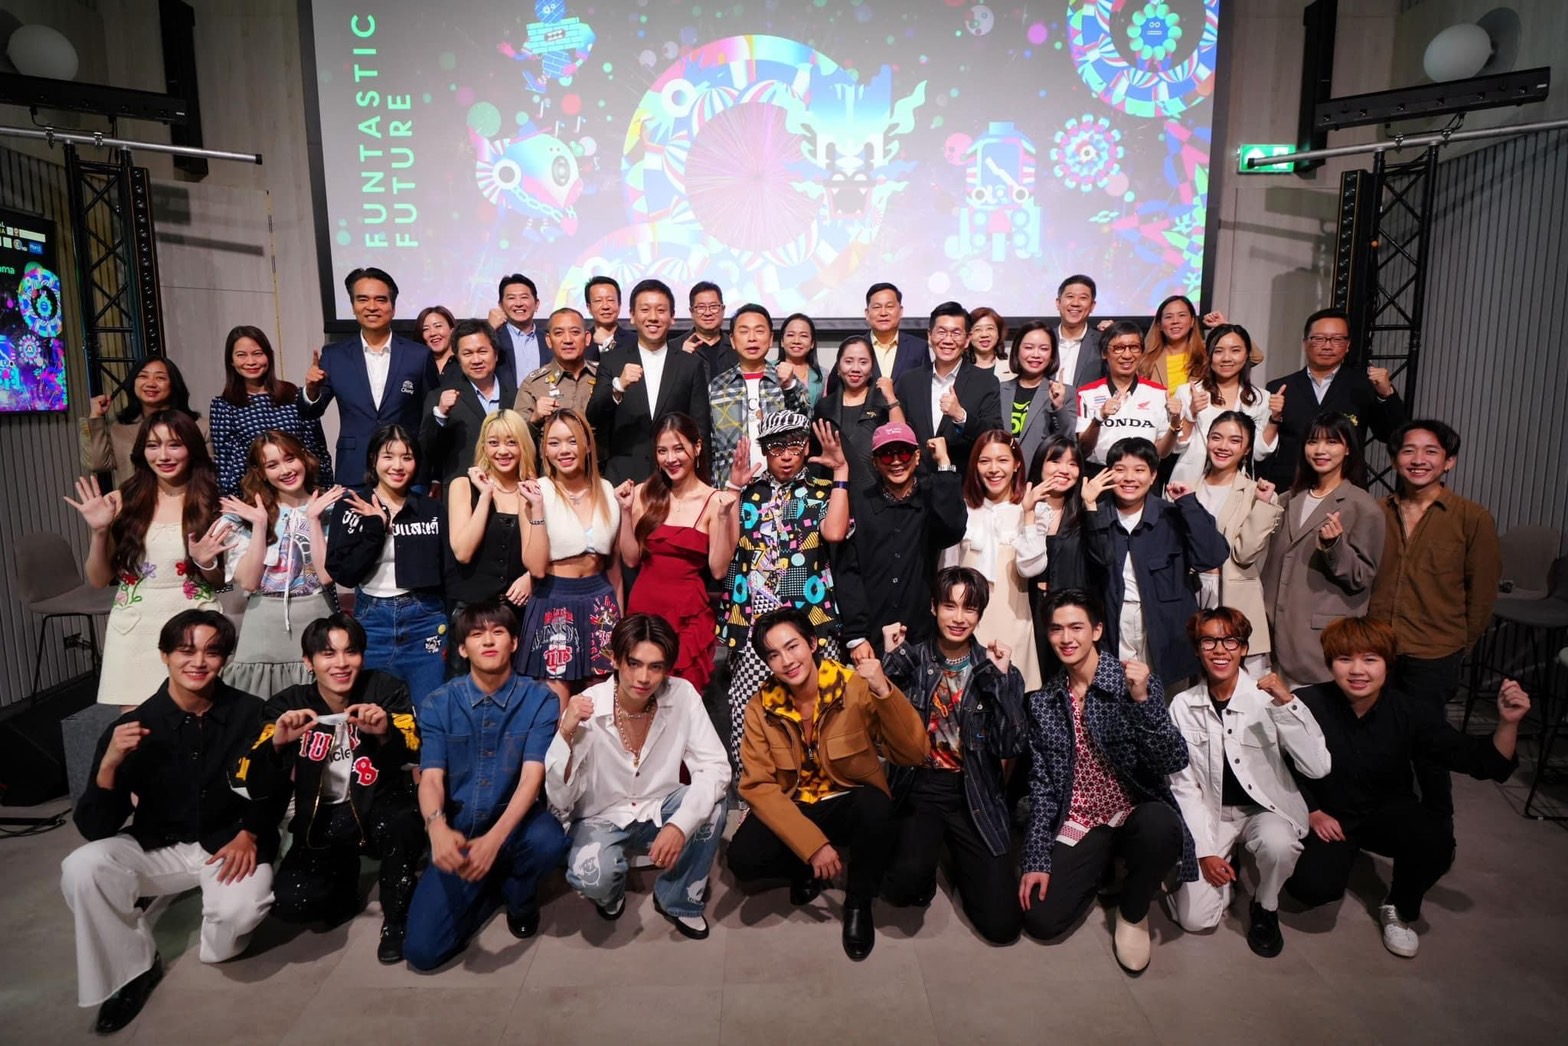 มันส์กระหึ่มเมือง !! ‘centralwOrld Bangkok Countdown 2024’ สร้างปรากฏการณ์ World’s Entertainment Countdown อันดับหนึ่งตลอดกาล ทุ่มงบกว่า 500 ล้านบาท ไลน์อัพศิลปินไทยและต่างชาติกว่า 200 ชีวิต ในฟรีคอนเสิร์ตโปรดักชั่นระดับโลก